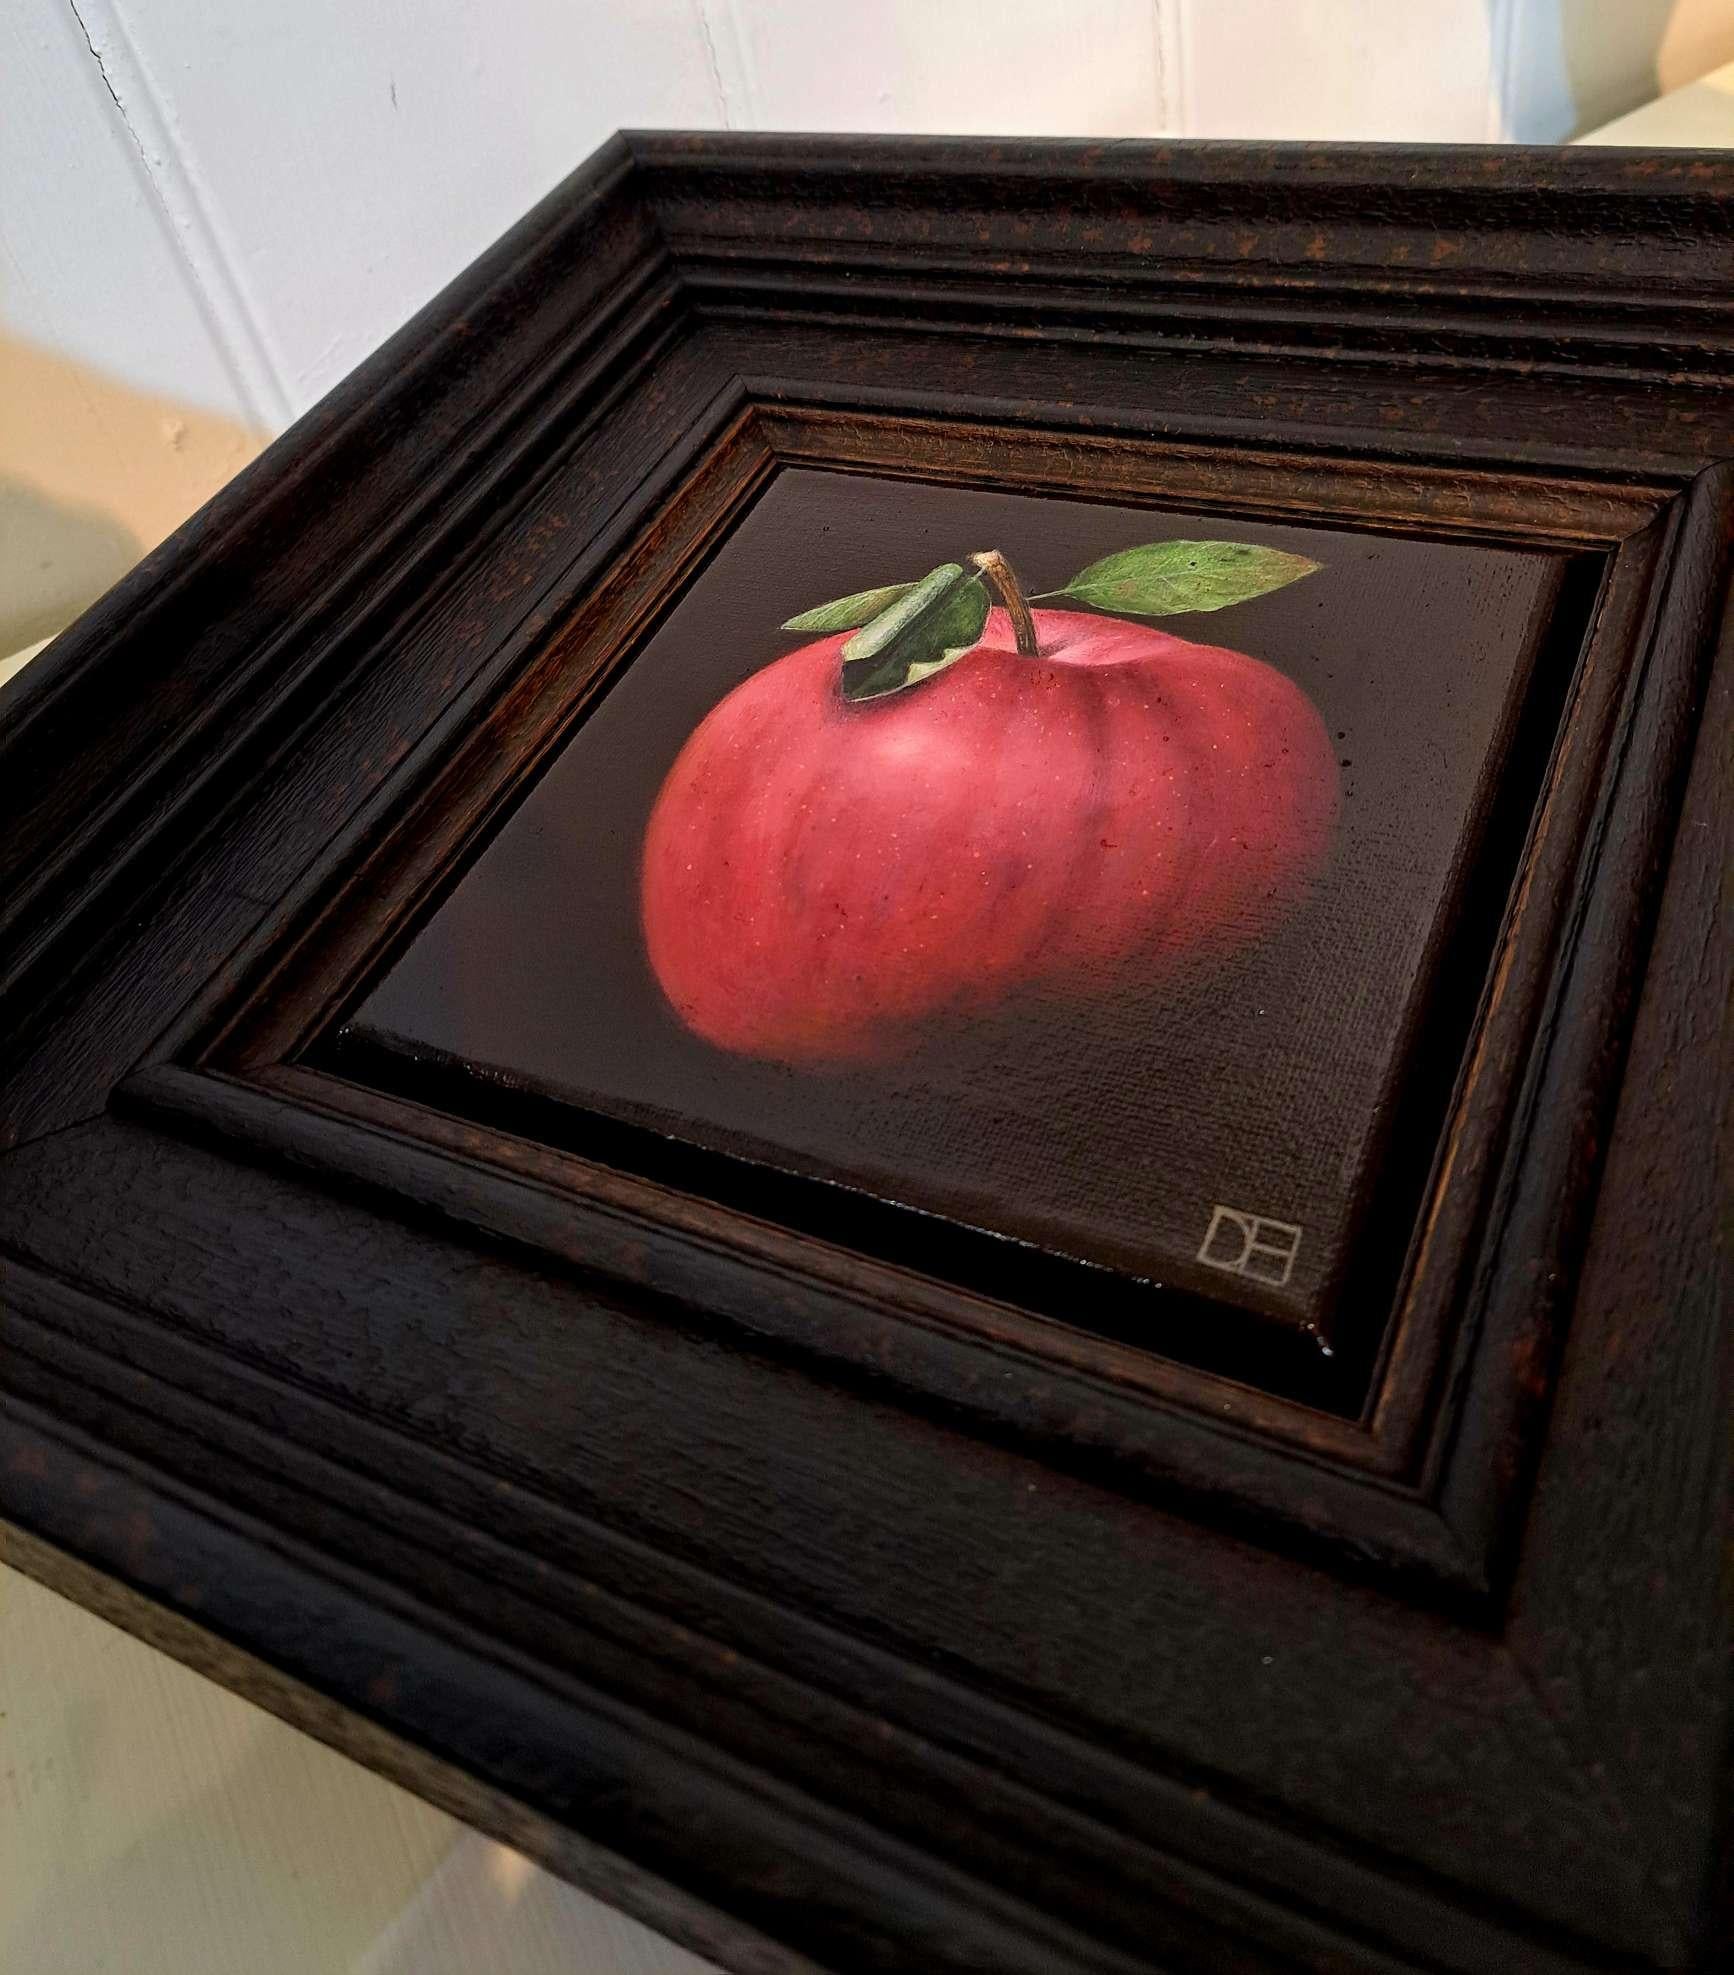 Very Shiny Very Red Apple ist ein Original-Ölgemälde von Dani Humberstone als Teil ihrer Serie realistischer Ölgemälde von Früchten mit einer Anspielung auf die barocke Stilllebenmalerei. Die Gemälde sind in einen schweren schwarzen